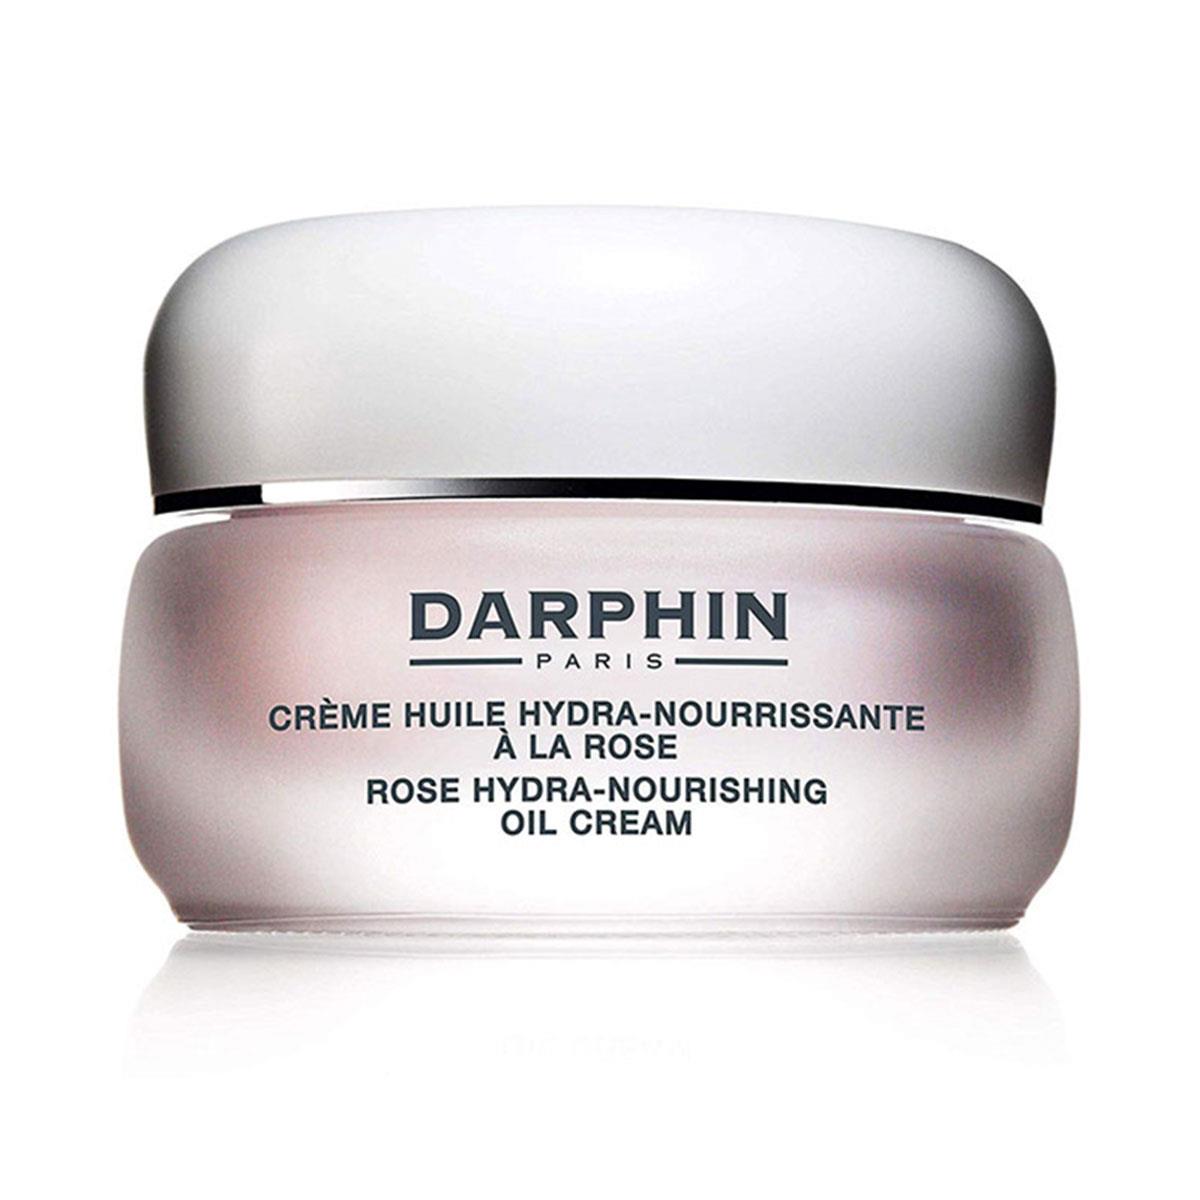 Darphin Rose Hydra Nourishing Oil Cream 50 ml - Daffne